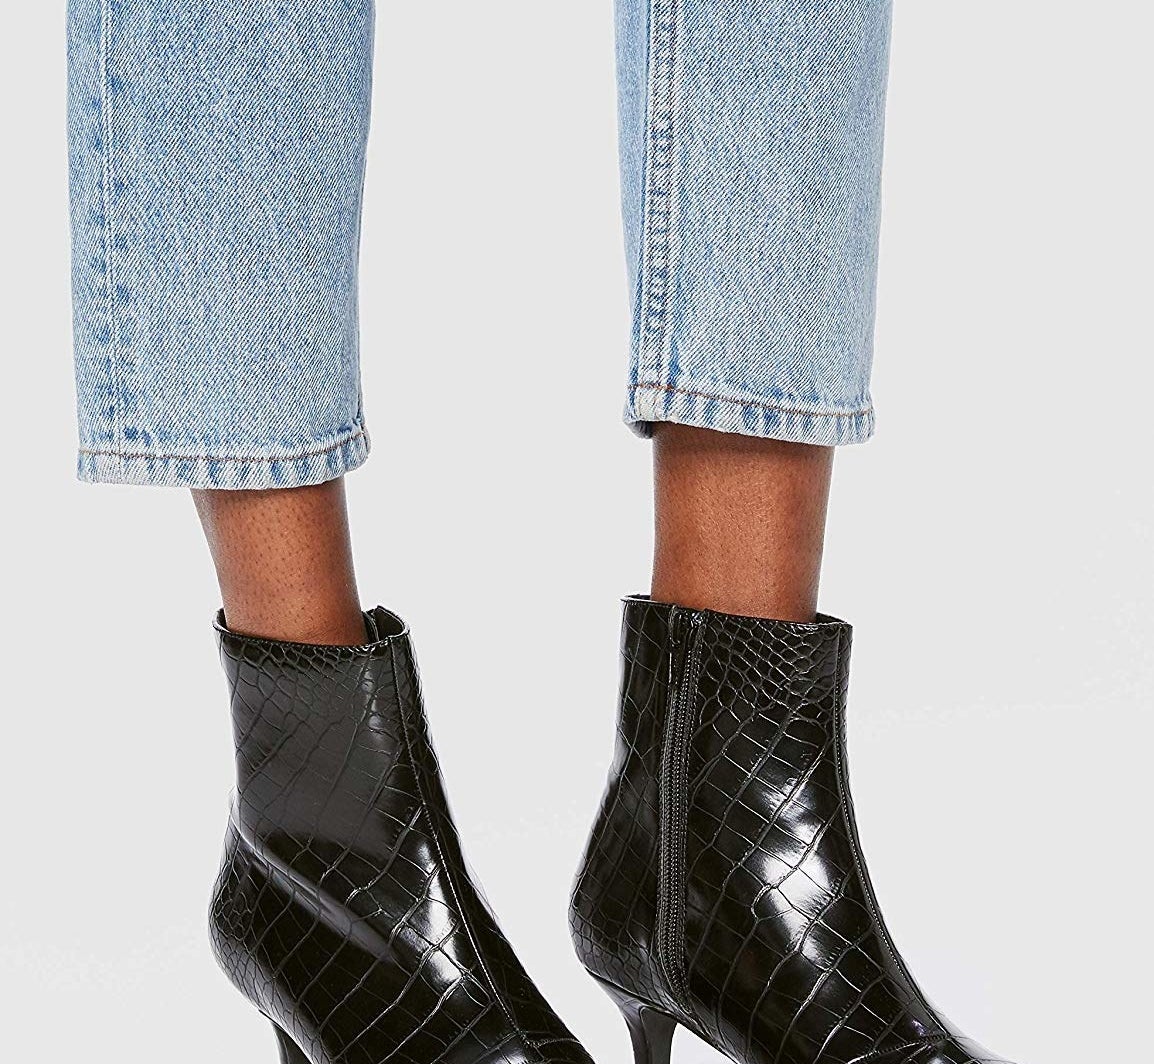 model wearing the black boot kitten heels with side zipper